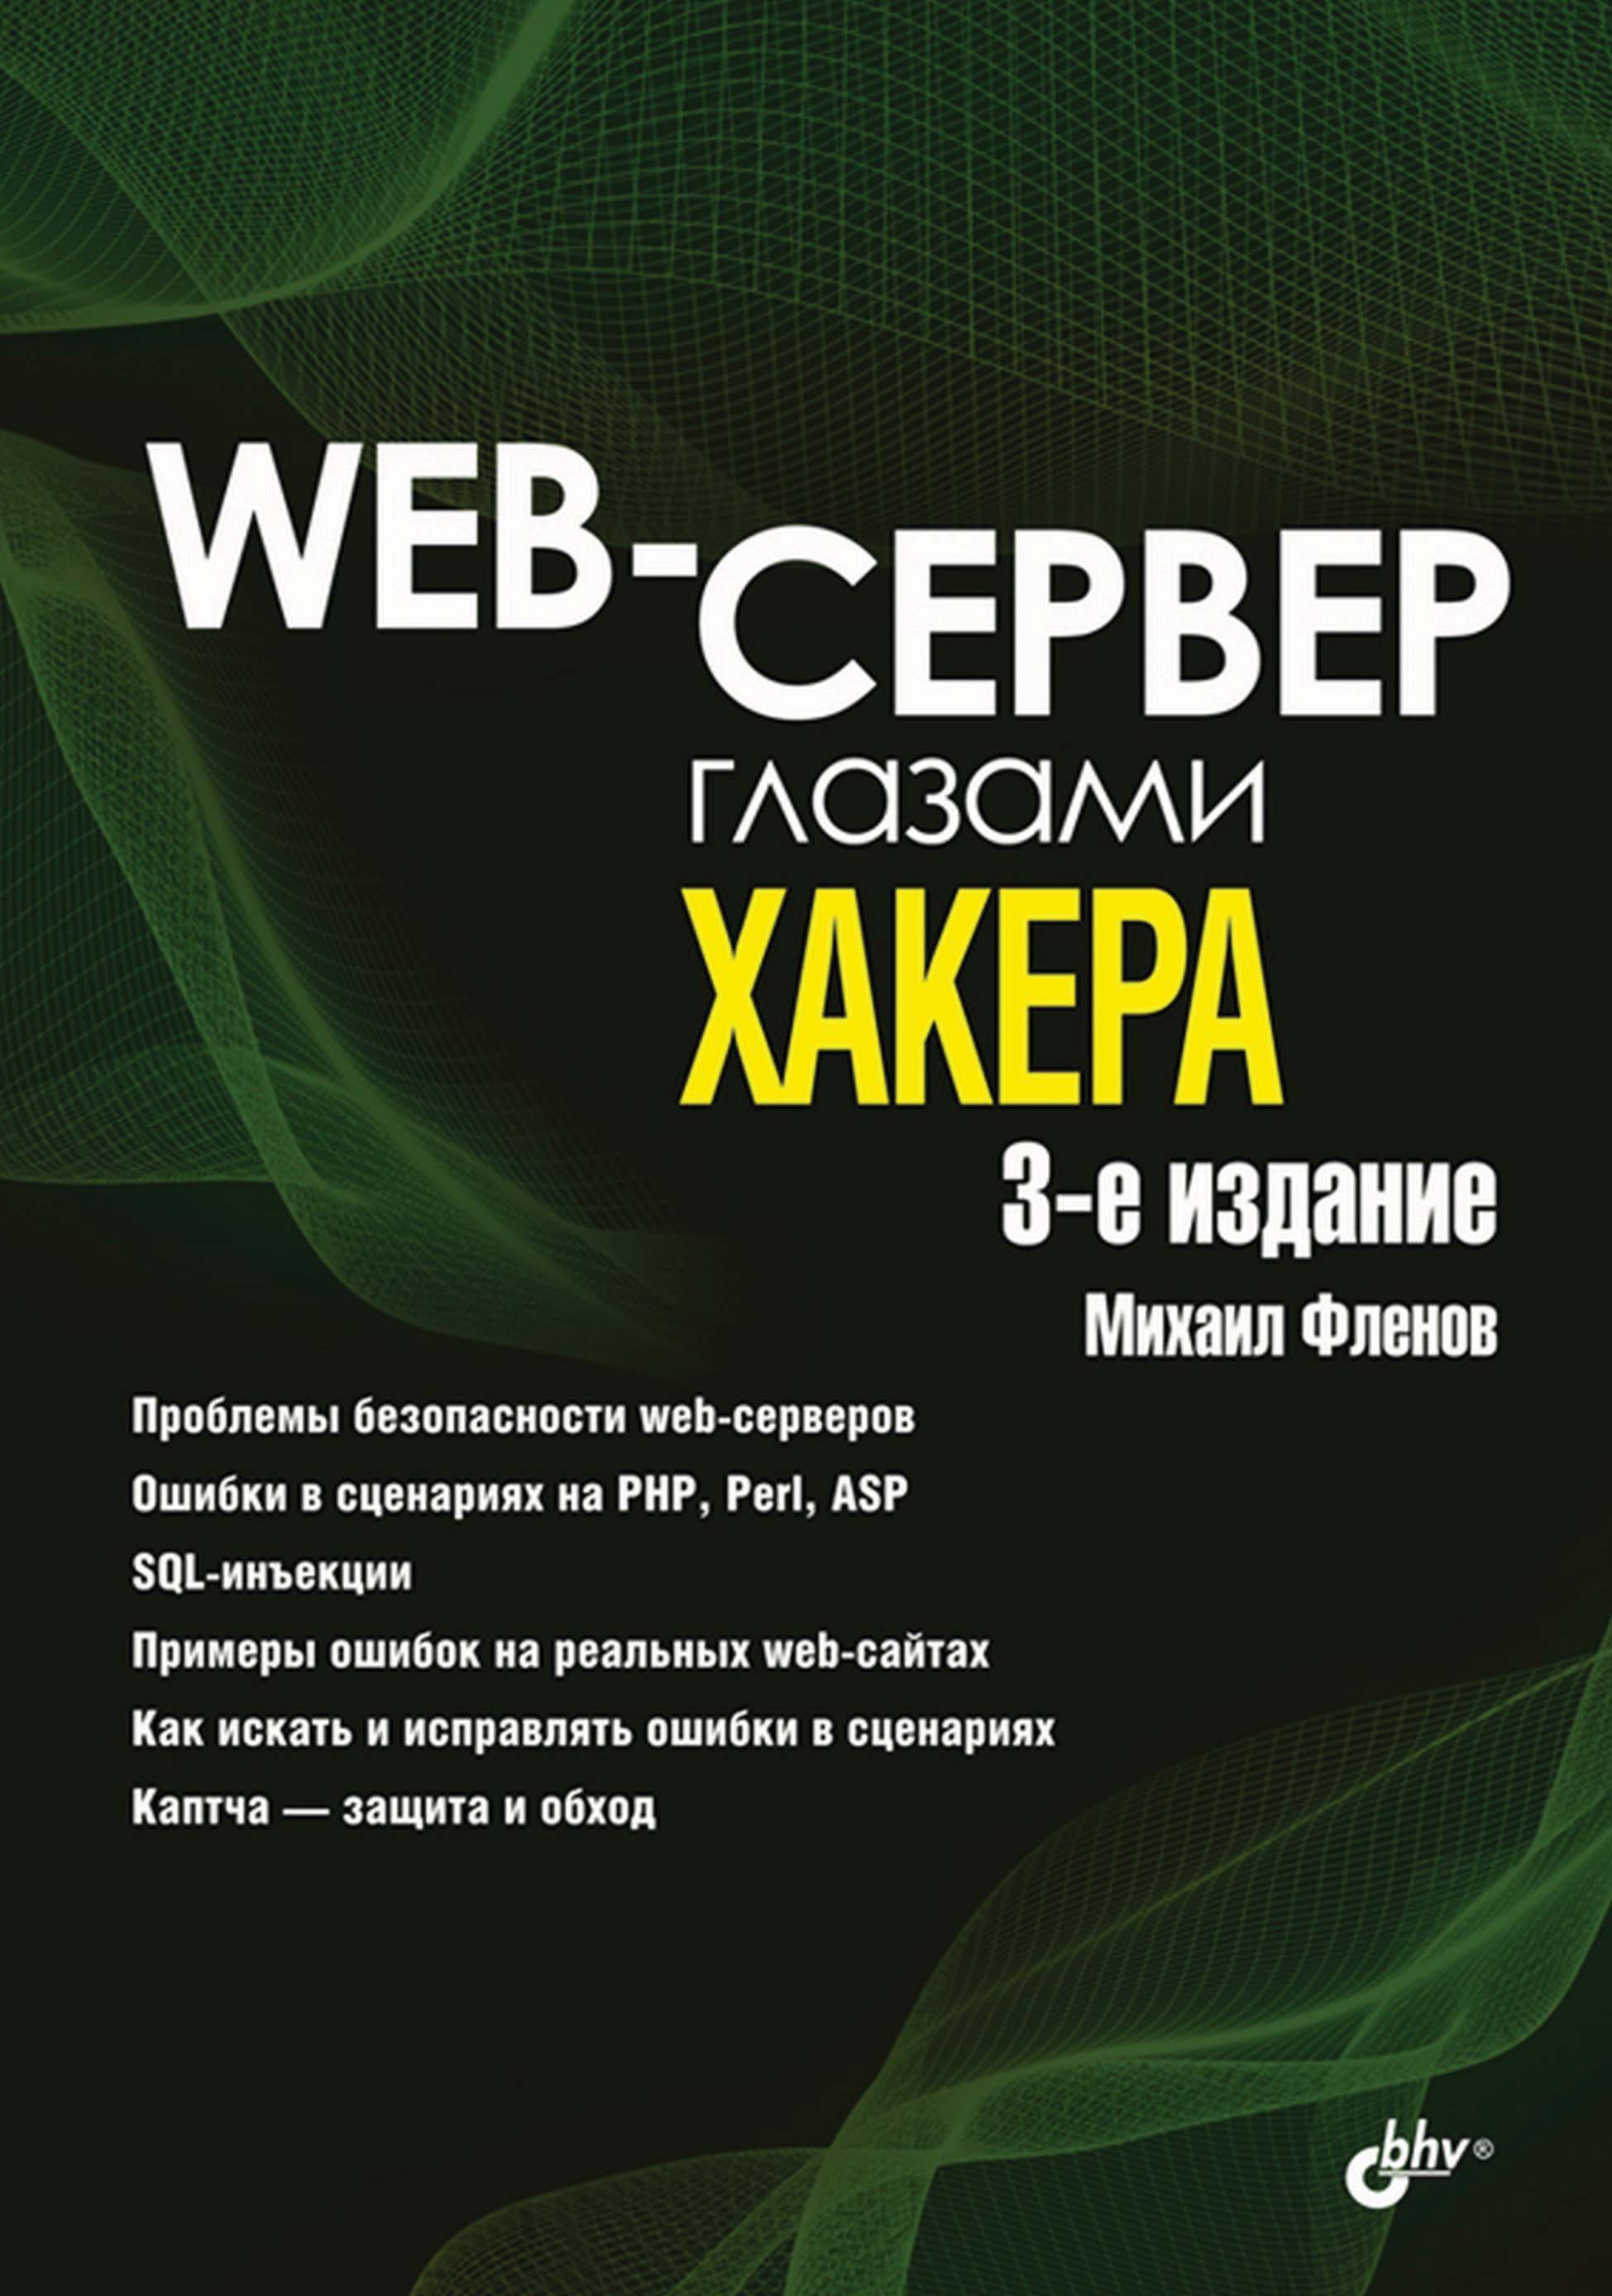 Книга Глазами хакера Web-сервер глазами хакера созданная Михаил Фленов может относится к жанру интернет, информационная безопасность. Стоимость электронной книги Web-сервер глазами хакера с идентификатором 4578536 составляет 400.00 руб.